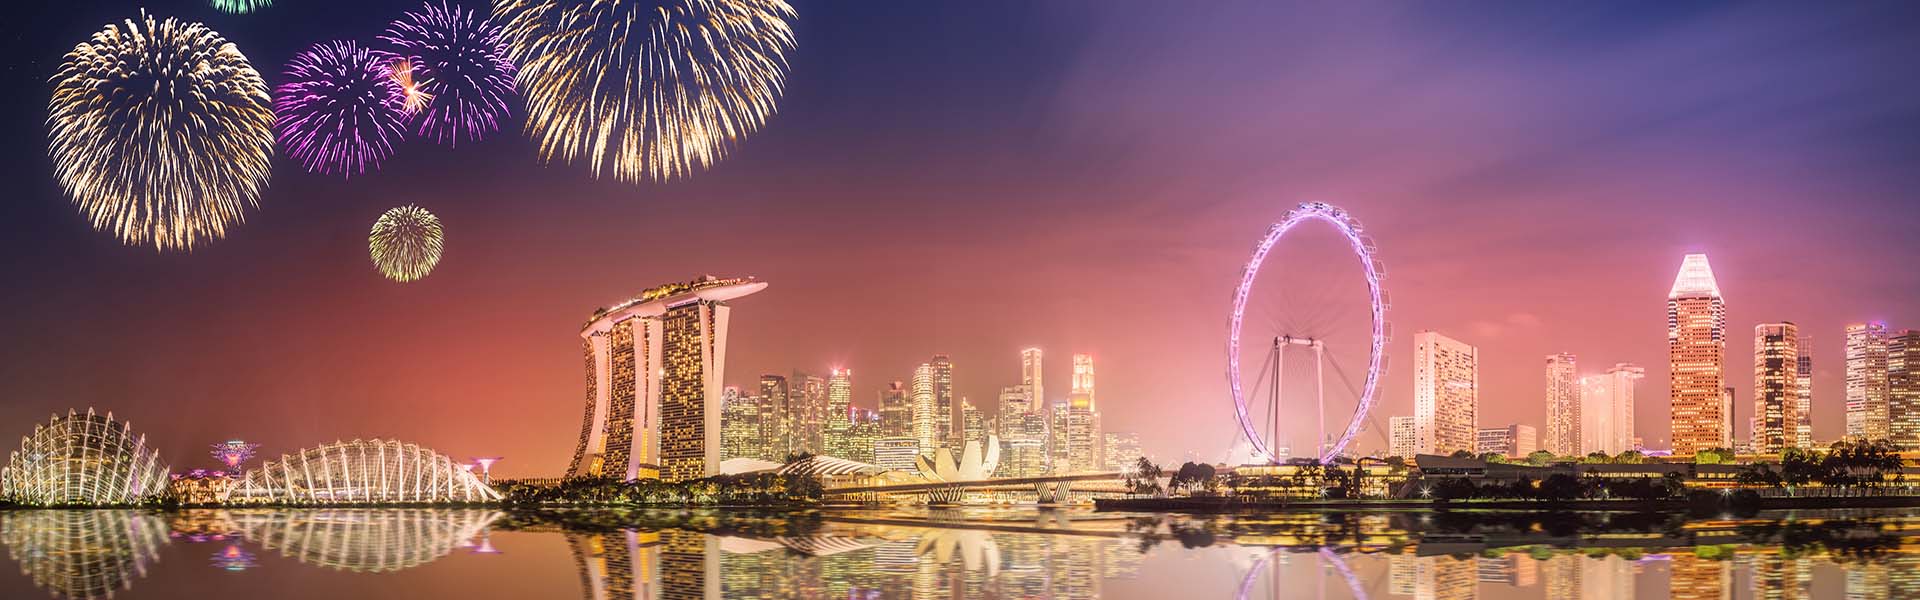 Kinh nghiệm đi du lịch Singapore tự túc cùng danh sách những địa điểm du lịch nổi tiếng tại Đảo quốc Sư Tử